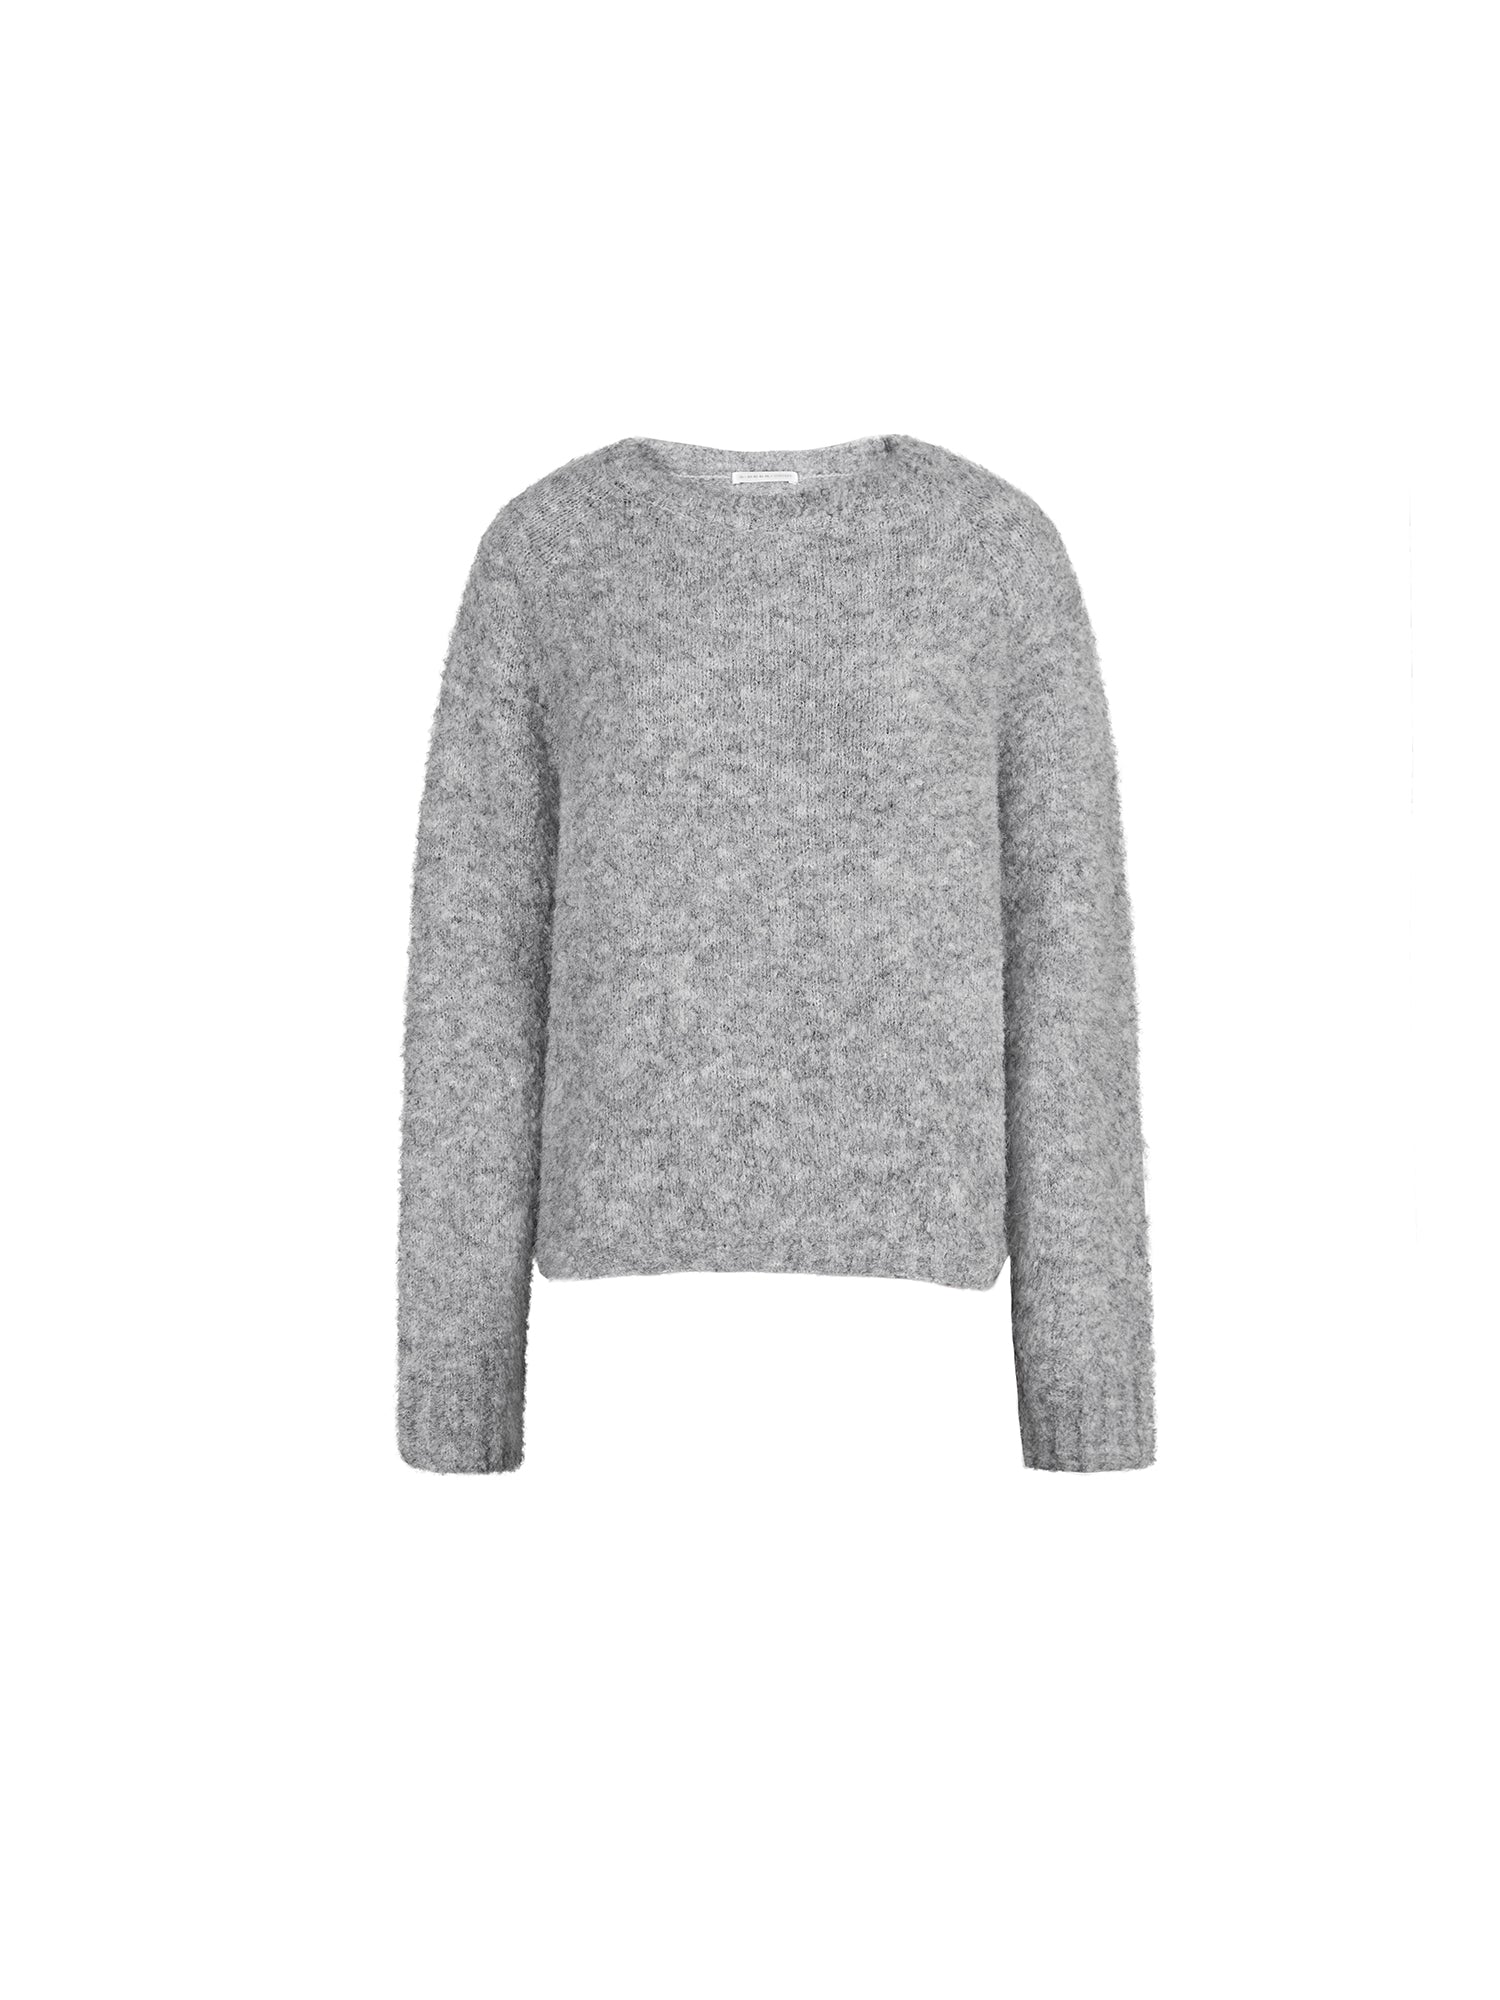 Suéter gris grueso de lana texturizada con cuello redondo informal